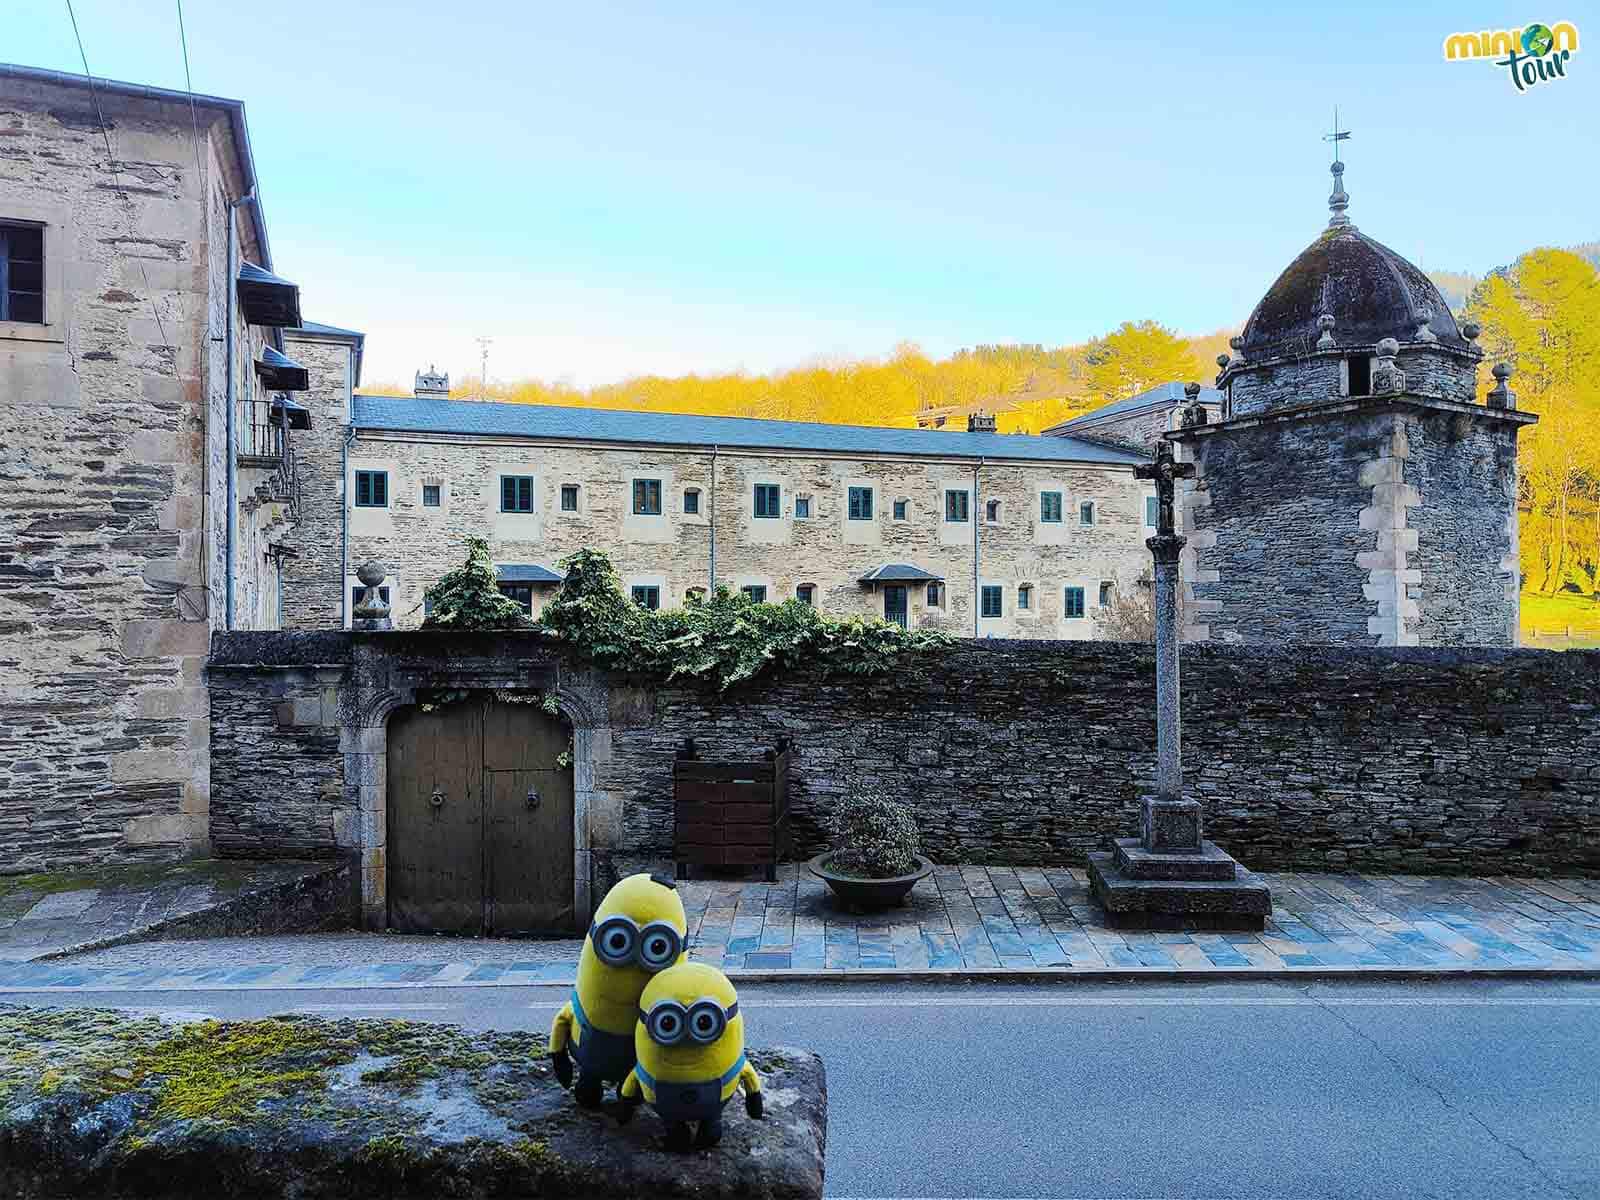 El Monasterio de Samos tiene un palomar